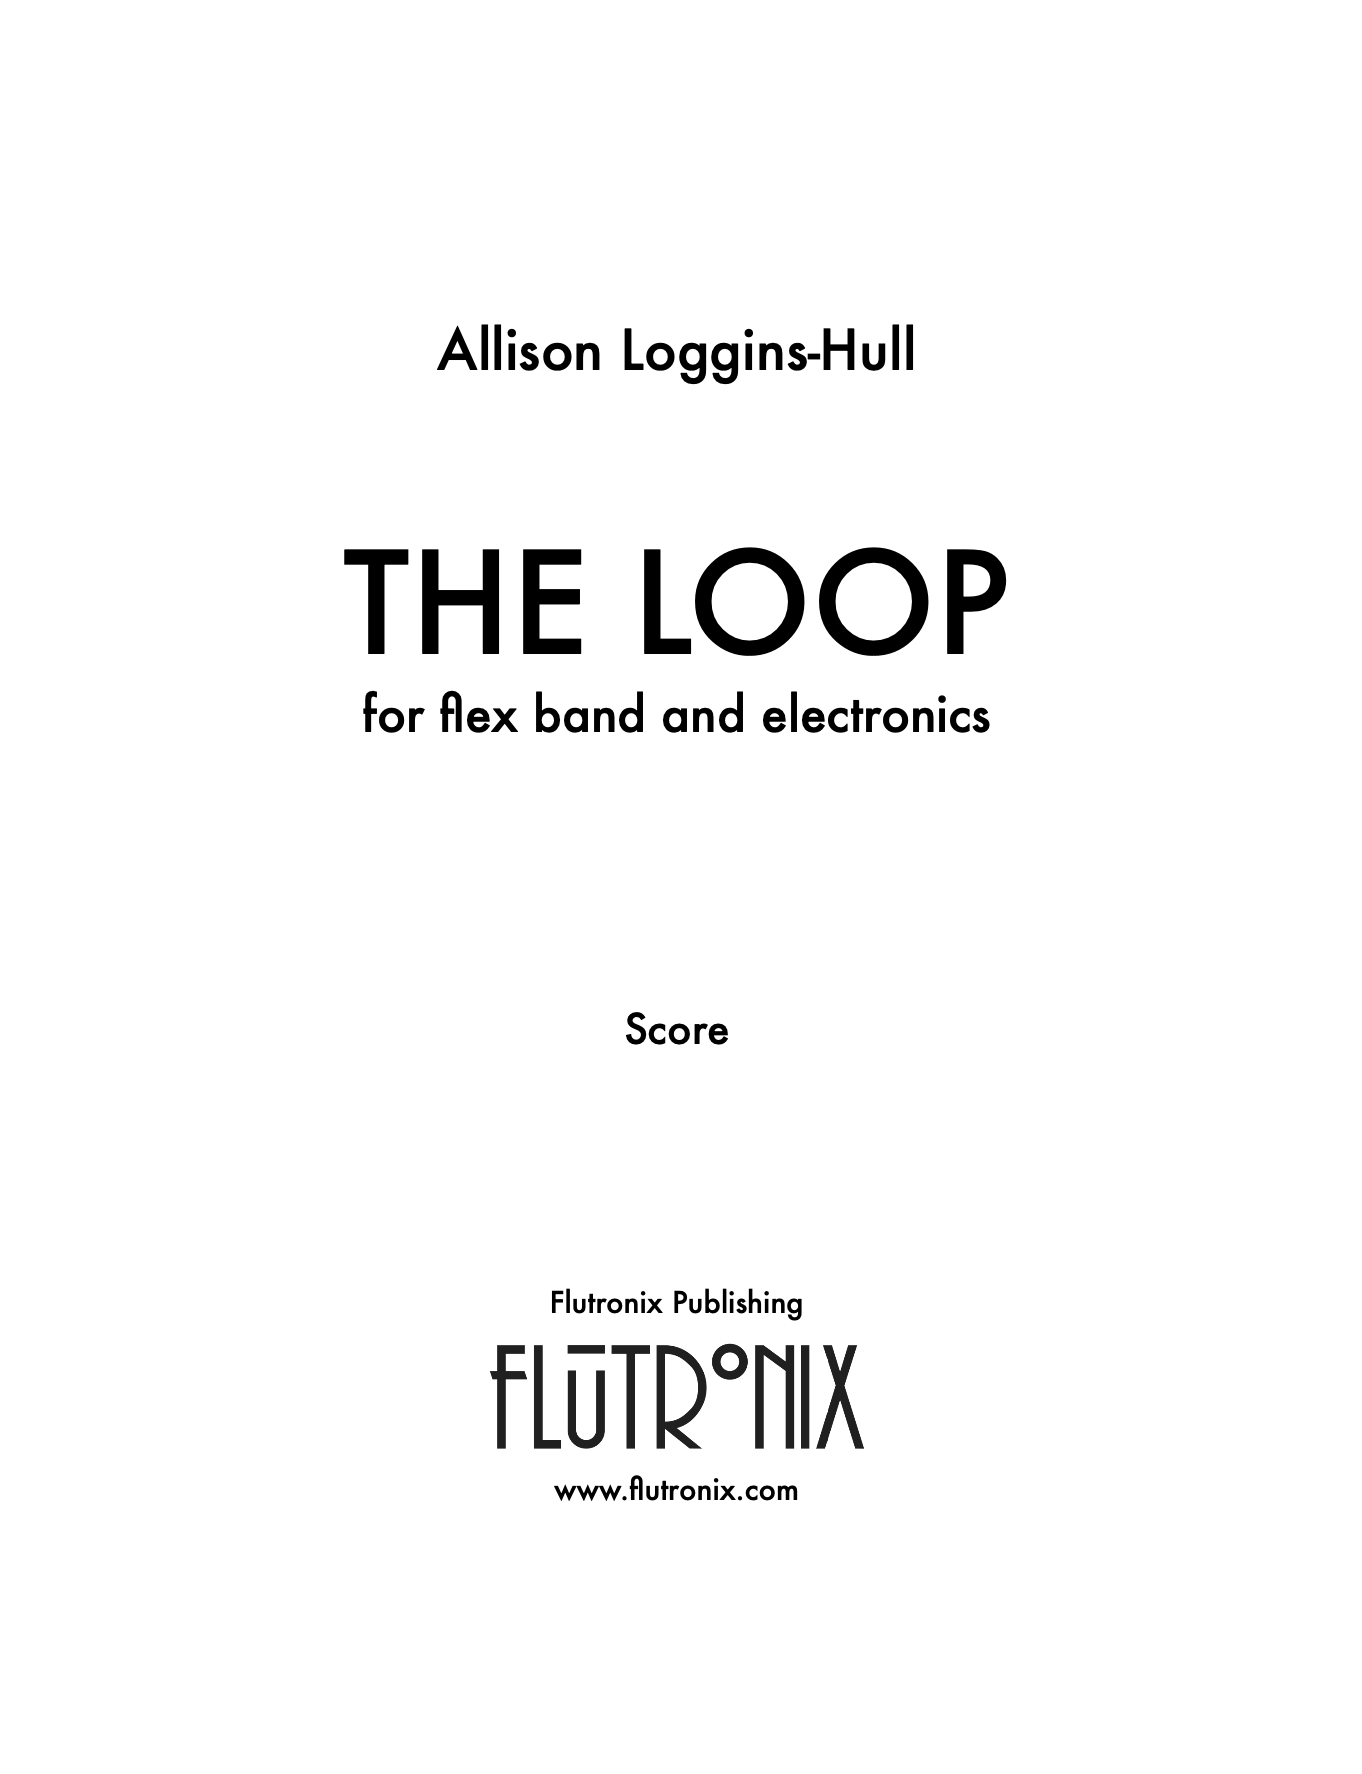 The Loop by Allison Loggins Hull